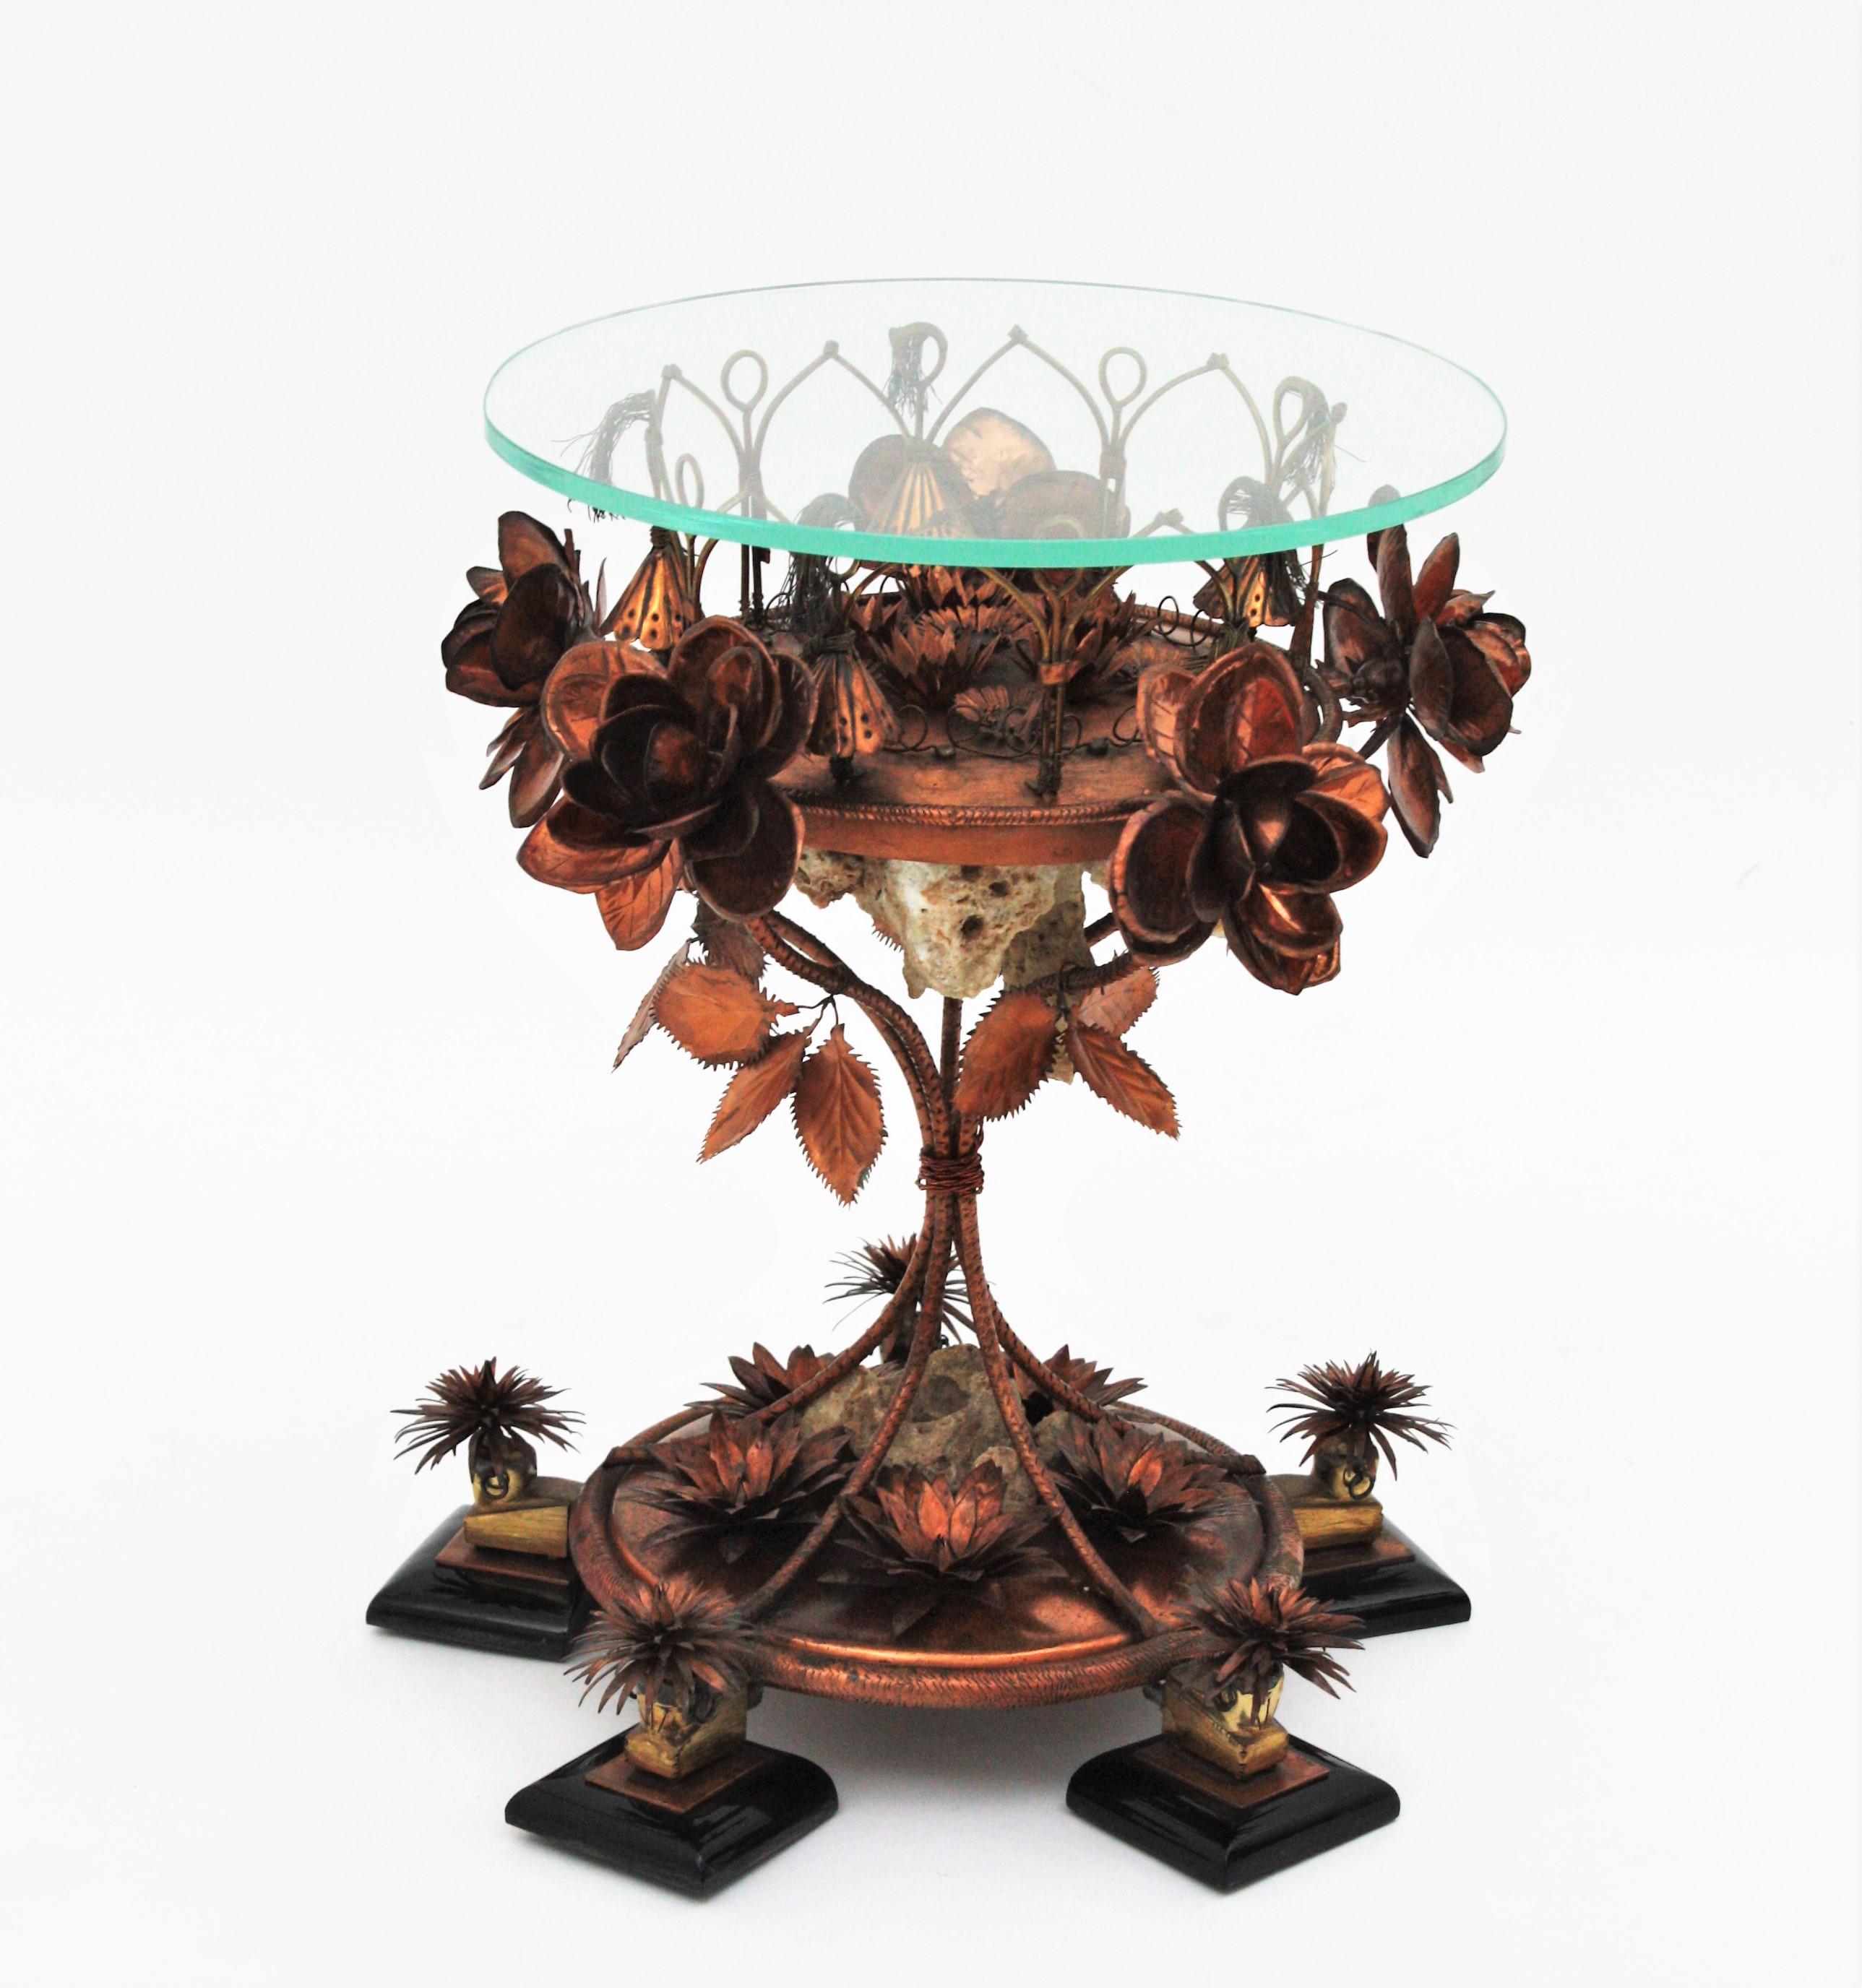 Einzigartiger handgefertigter kleiner Tisch aus Kupfer, Stein und Glas mit einer Darstellung des Sardana-Tanzes. Spanien, 1950er-1960er Jahre.
Dieser außergewöhnliche Tisch wurde vollständig von Hand gefertigt (Bitte sehen Sie im Detail die